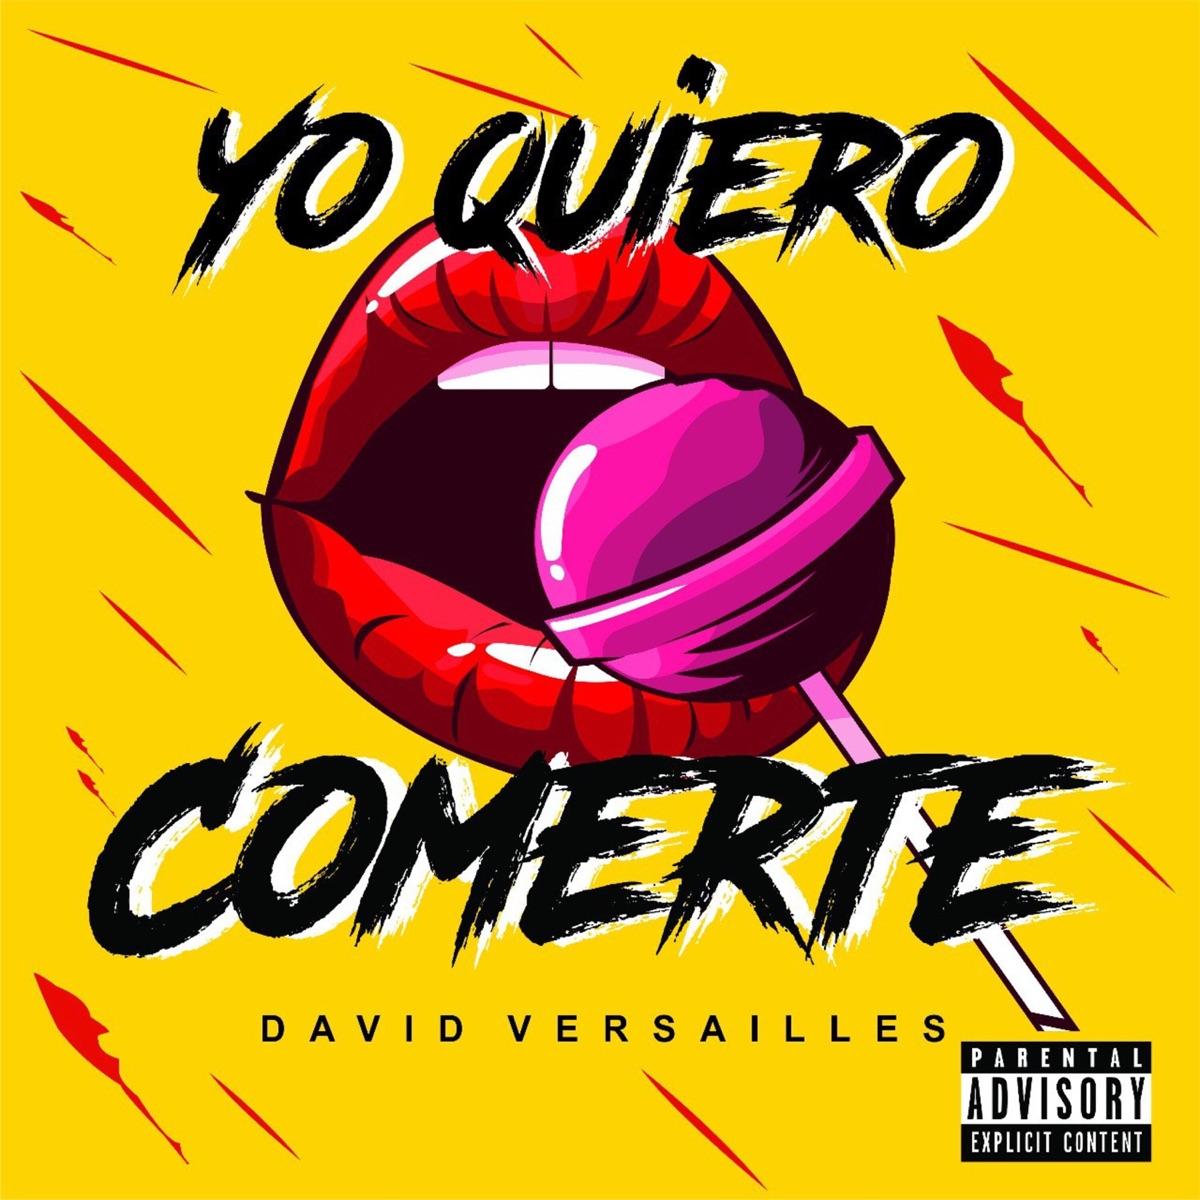 David Versailles - Yo Quiero Comerte - Single